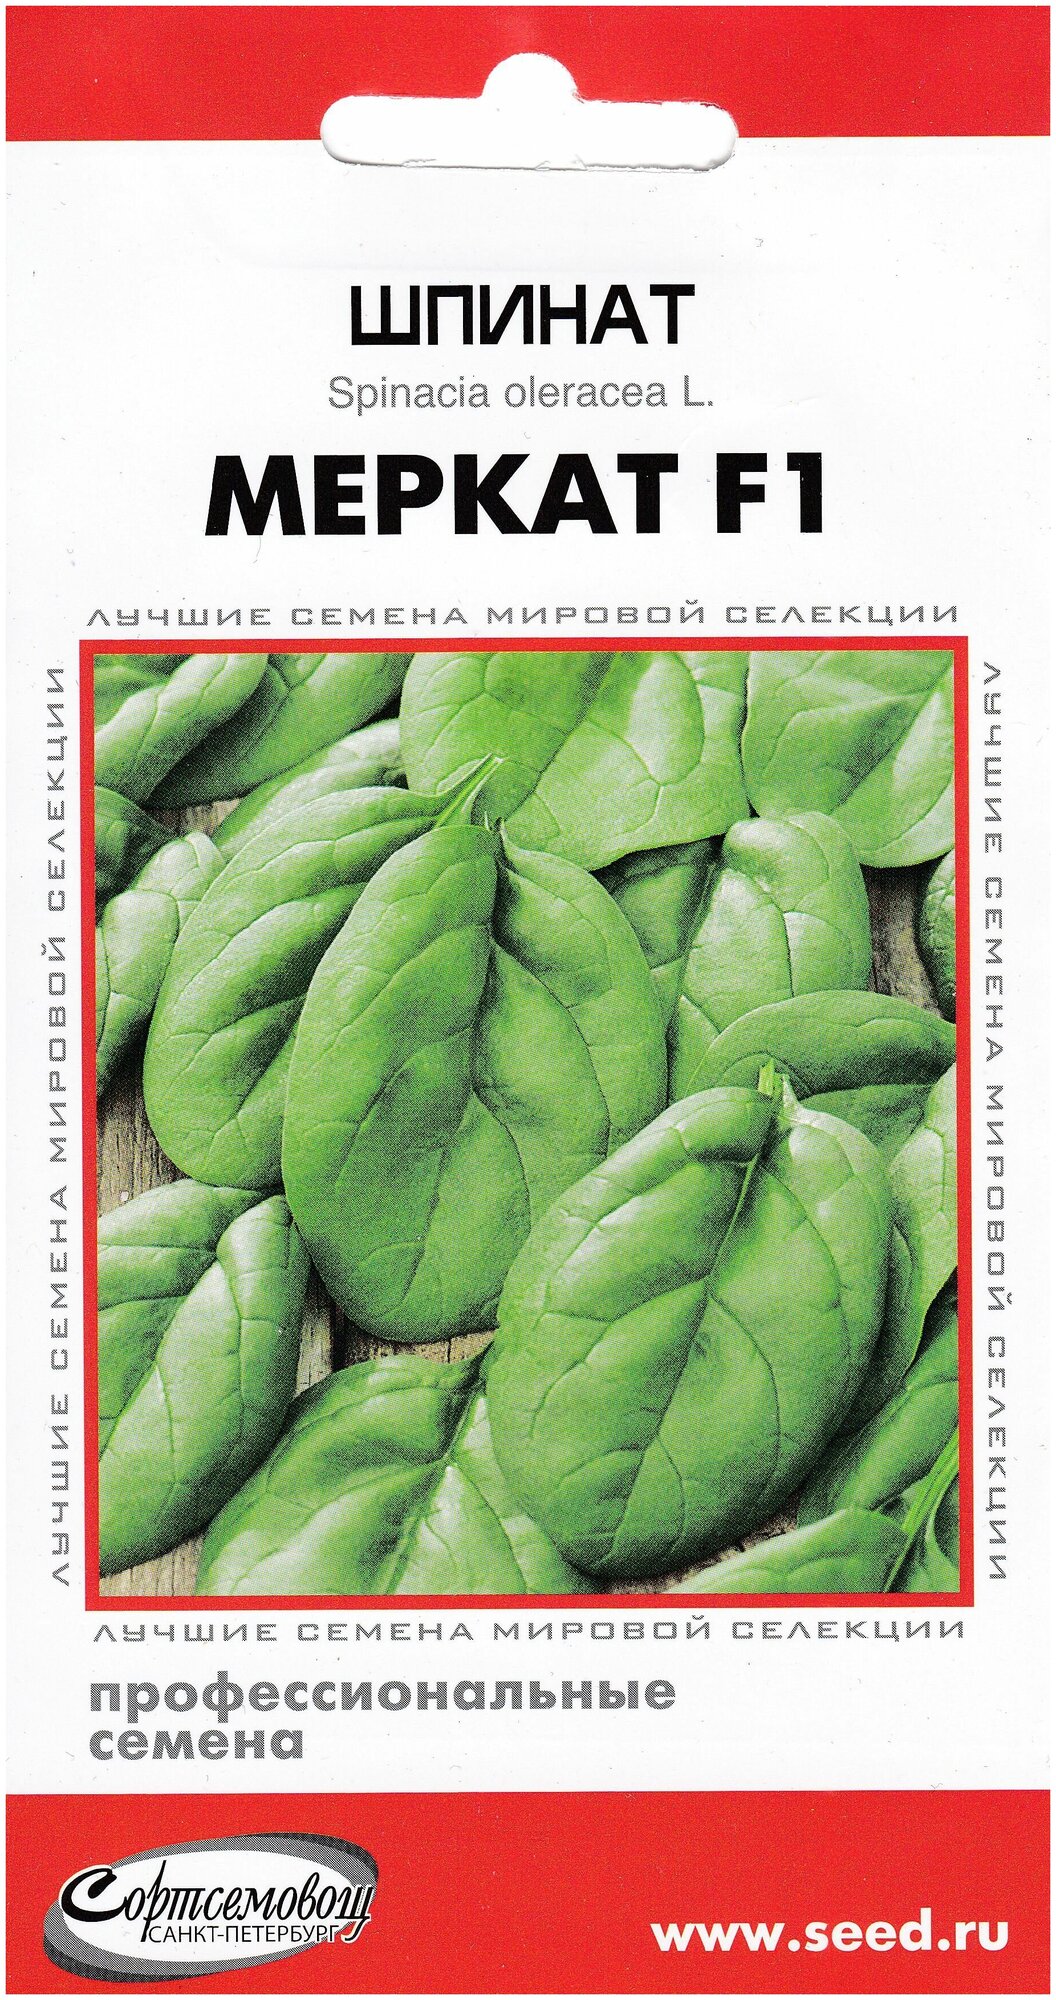 Шпинат Меркат F1, 50 семян — купить в интернет-магазине по низкой цене наЯндекс Маркете